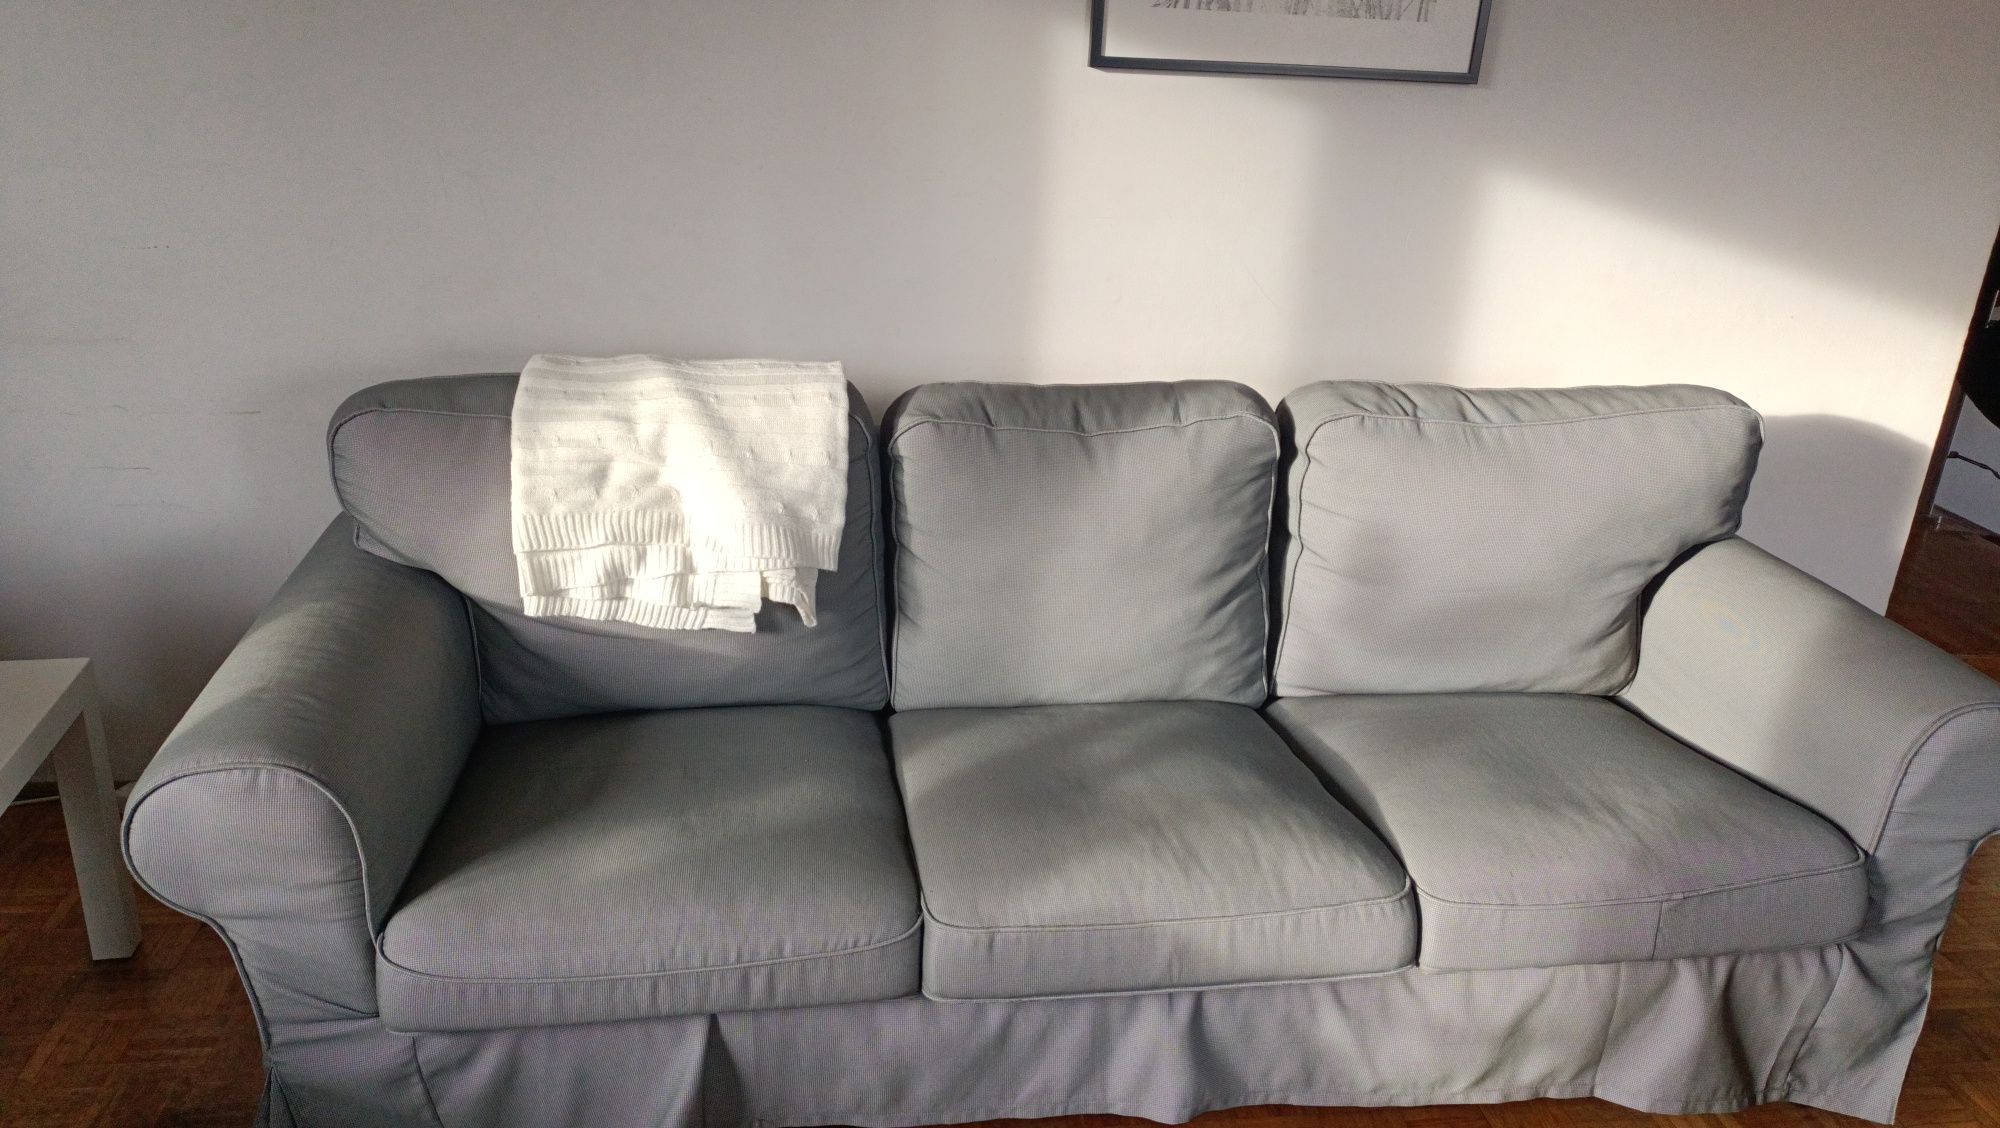 Sofa trzy osobowa Ektrop Ikea